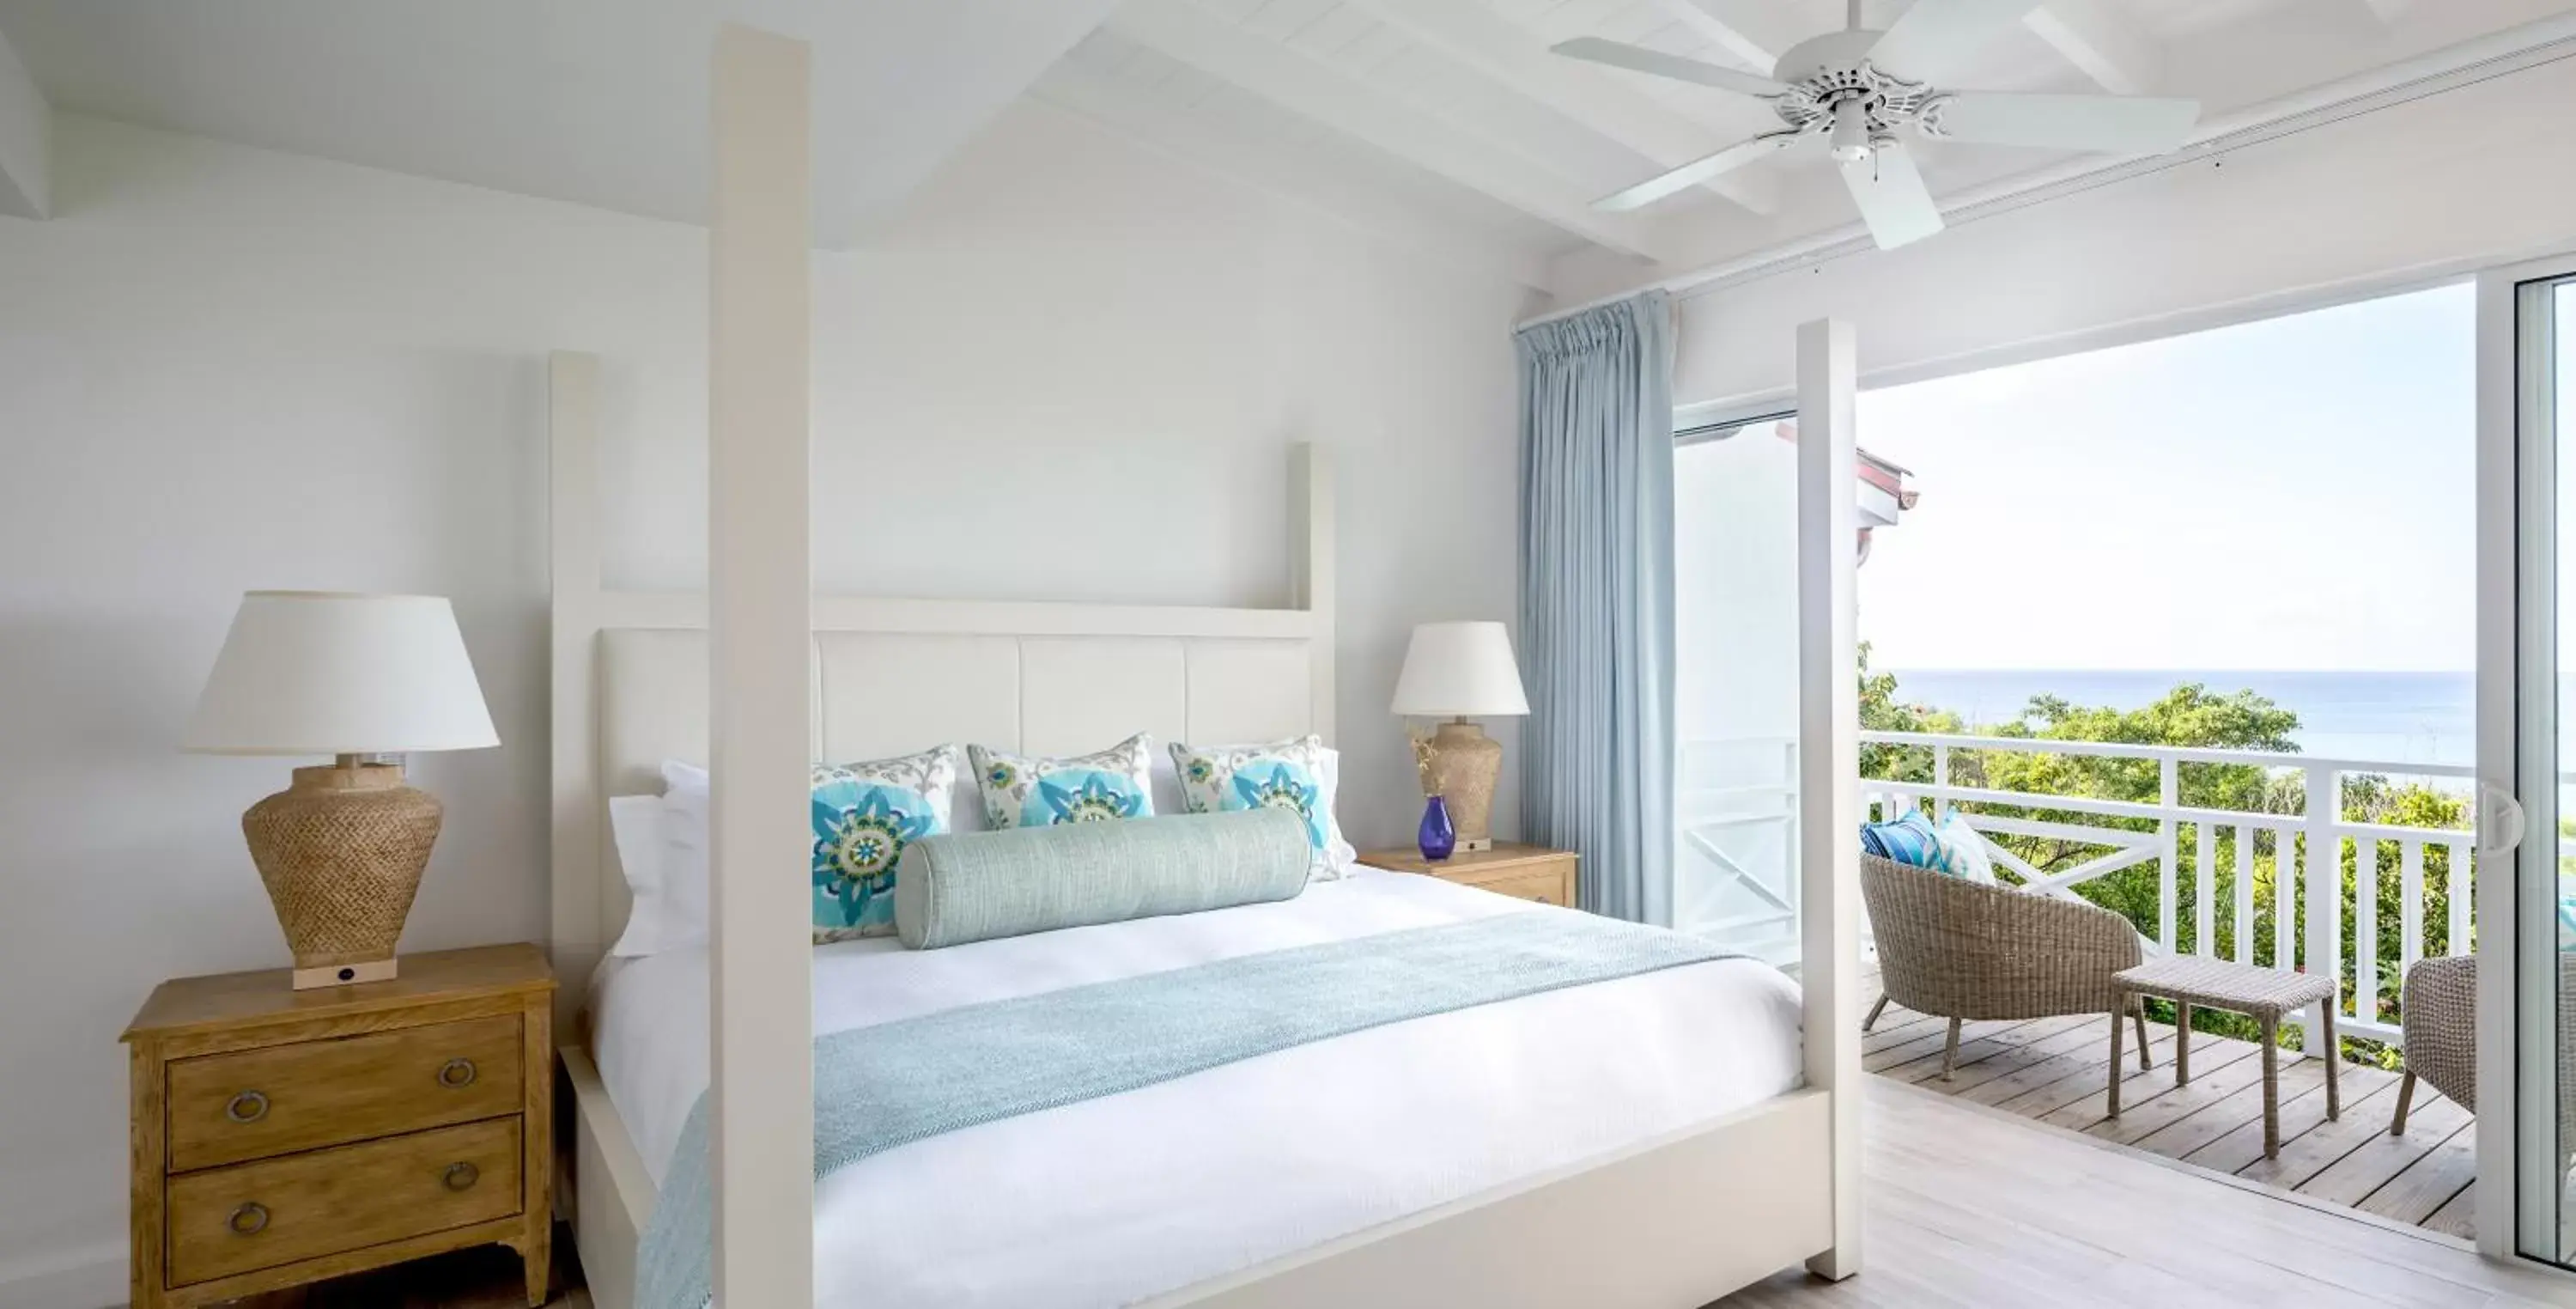 Bed, Room Photo in Windjammer Landing Villa Beach Resort